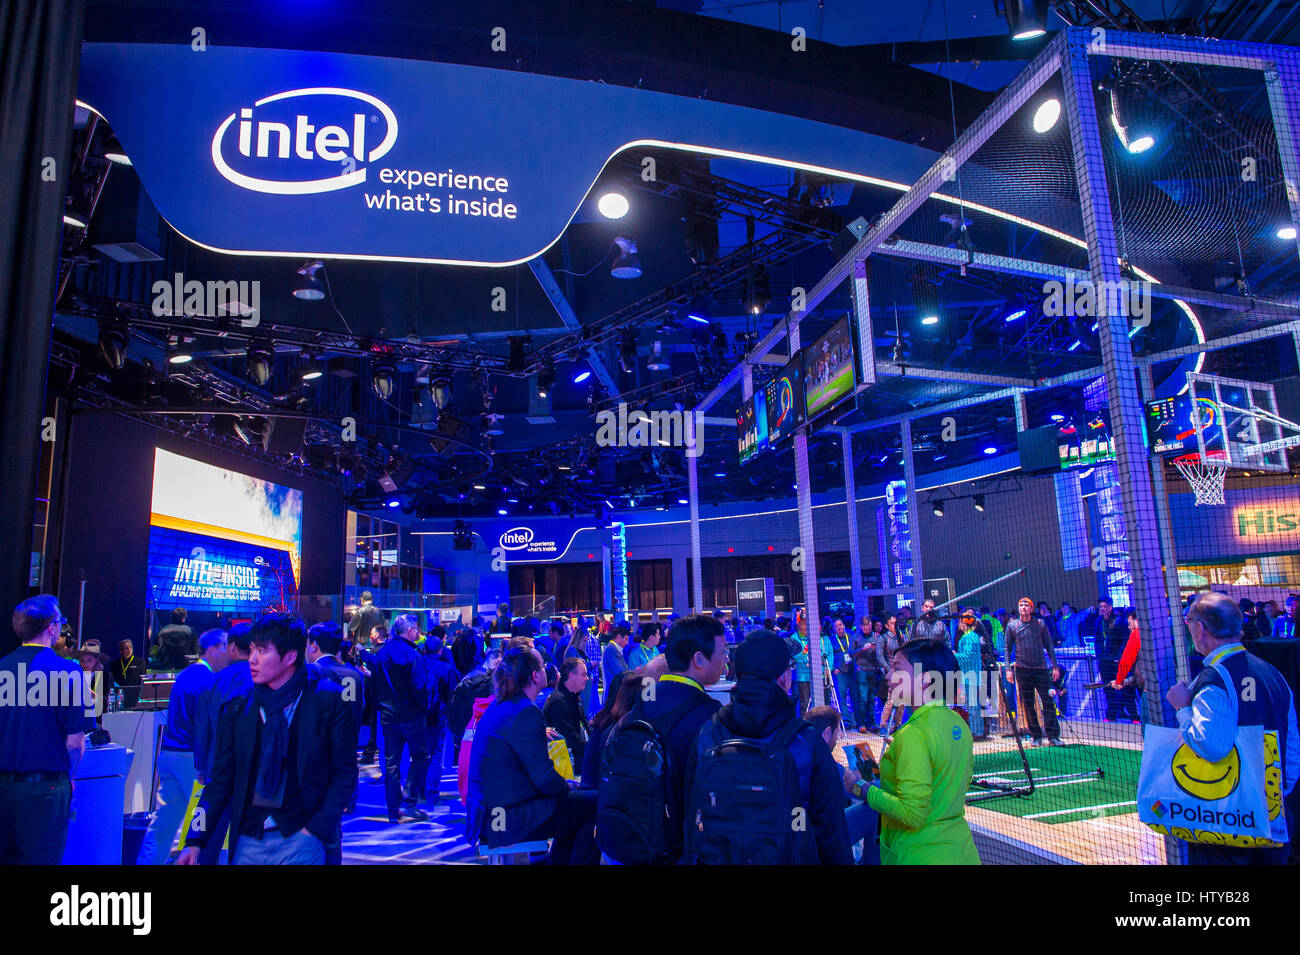 LAS VEGAS - Jan 08 : El stand de Intel en el CES Show en Las Vegas, 08 de enero de 2017, el CES es el principal consumidor del mundo-electronics show. Foto de stock